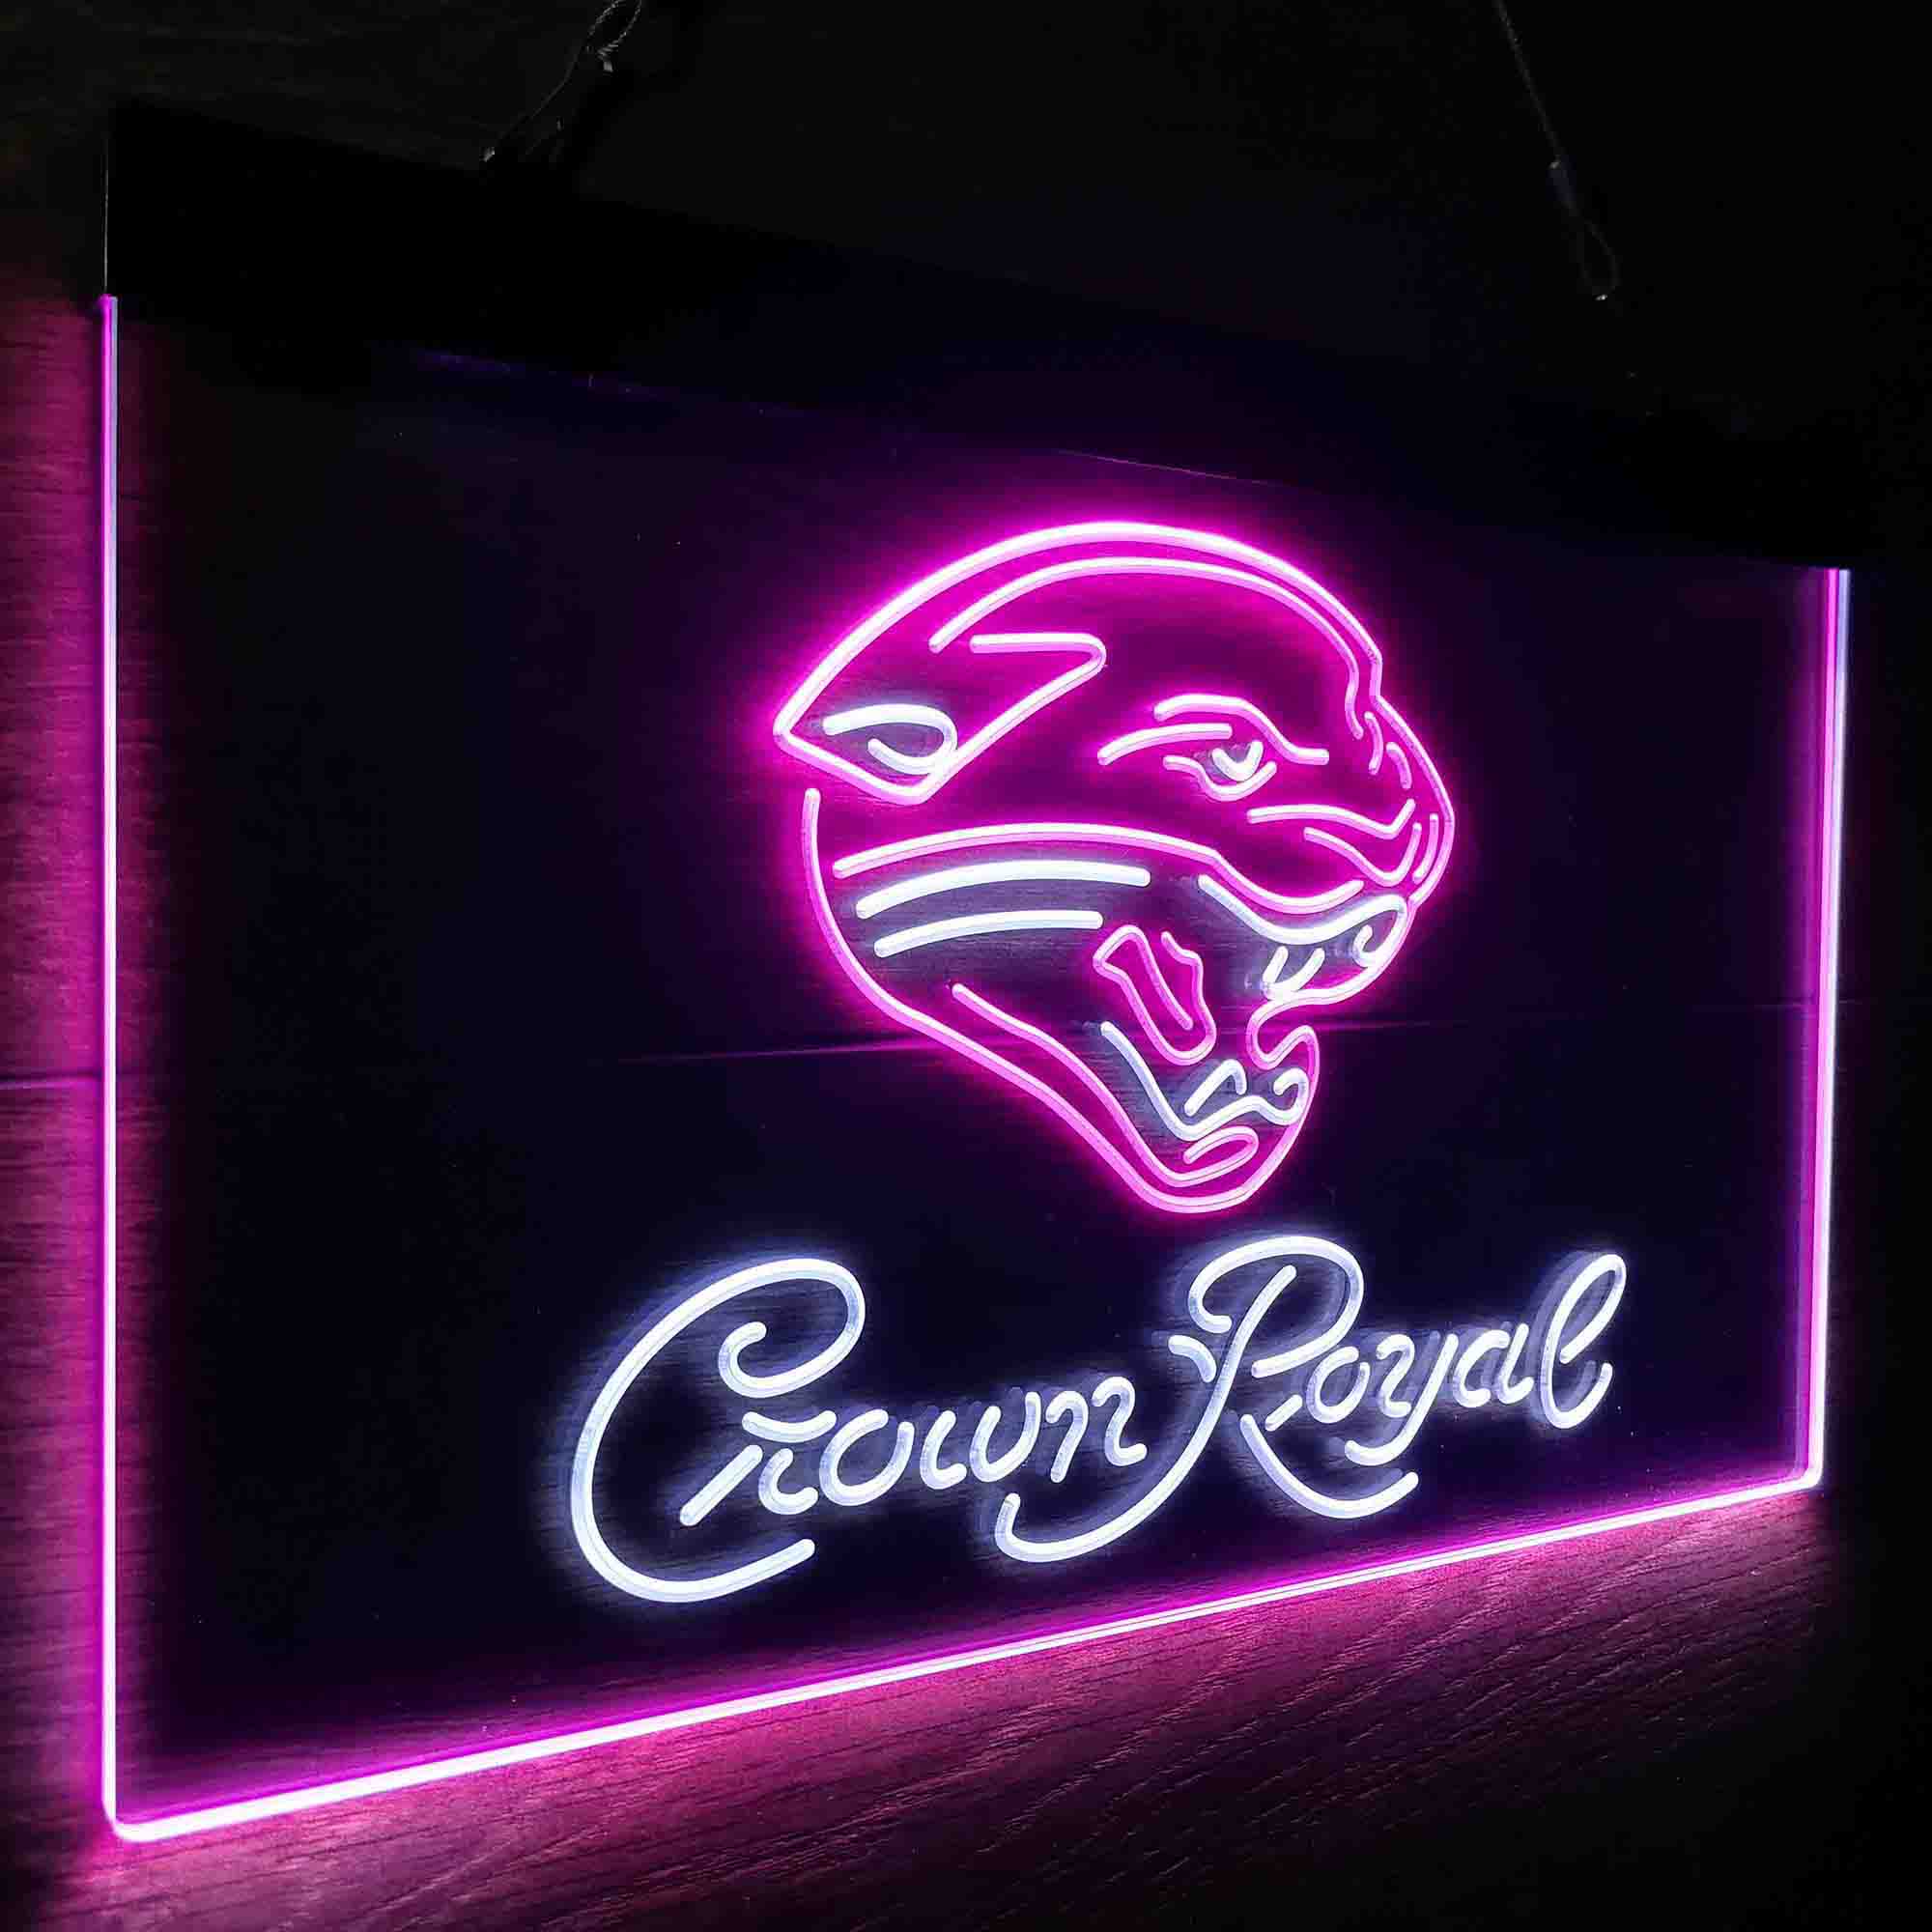 Jacksonville Jaguars Crown Royal Neon-Like LED Sign - ProLedSign